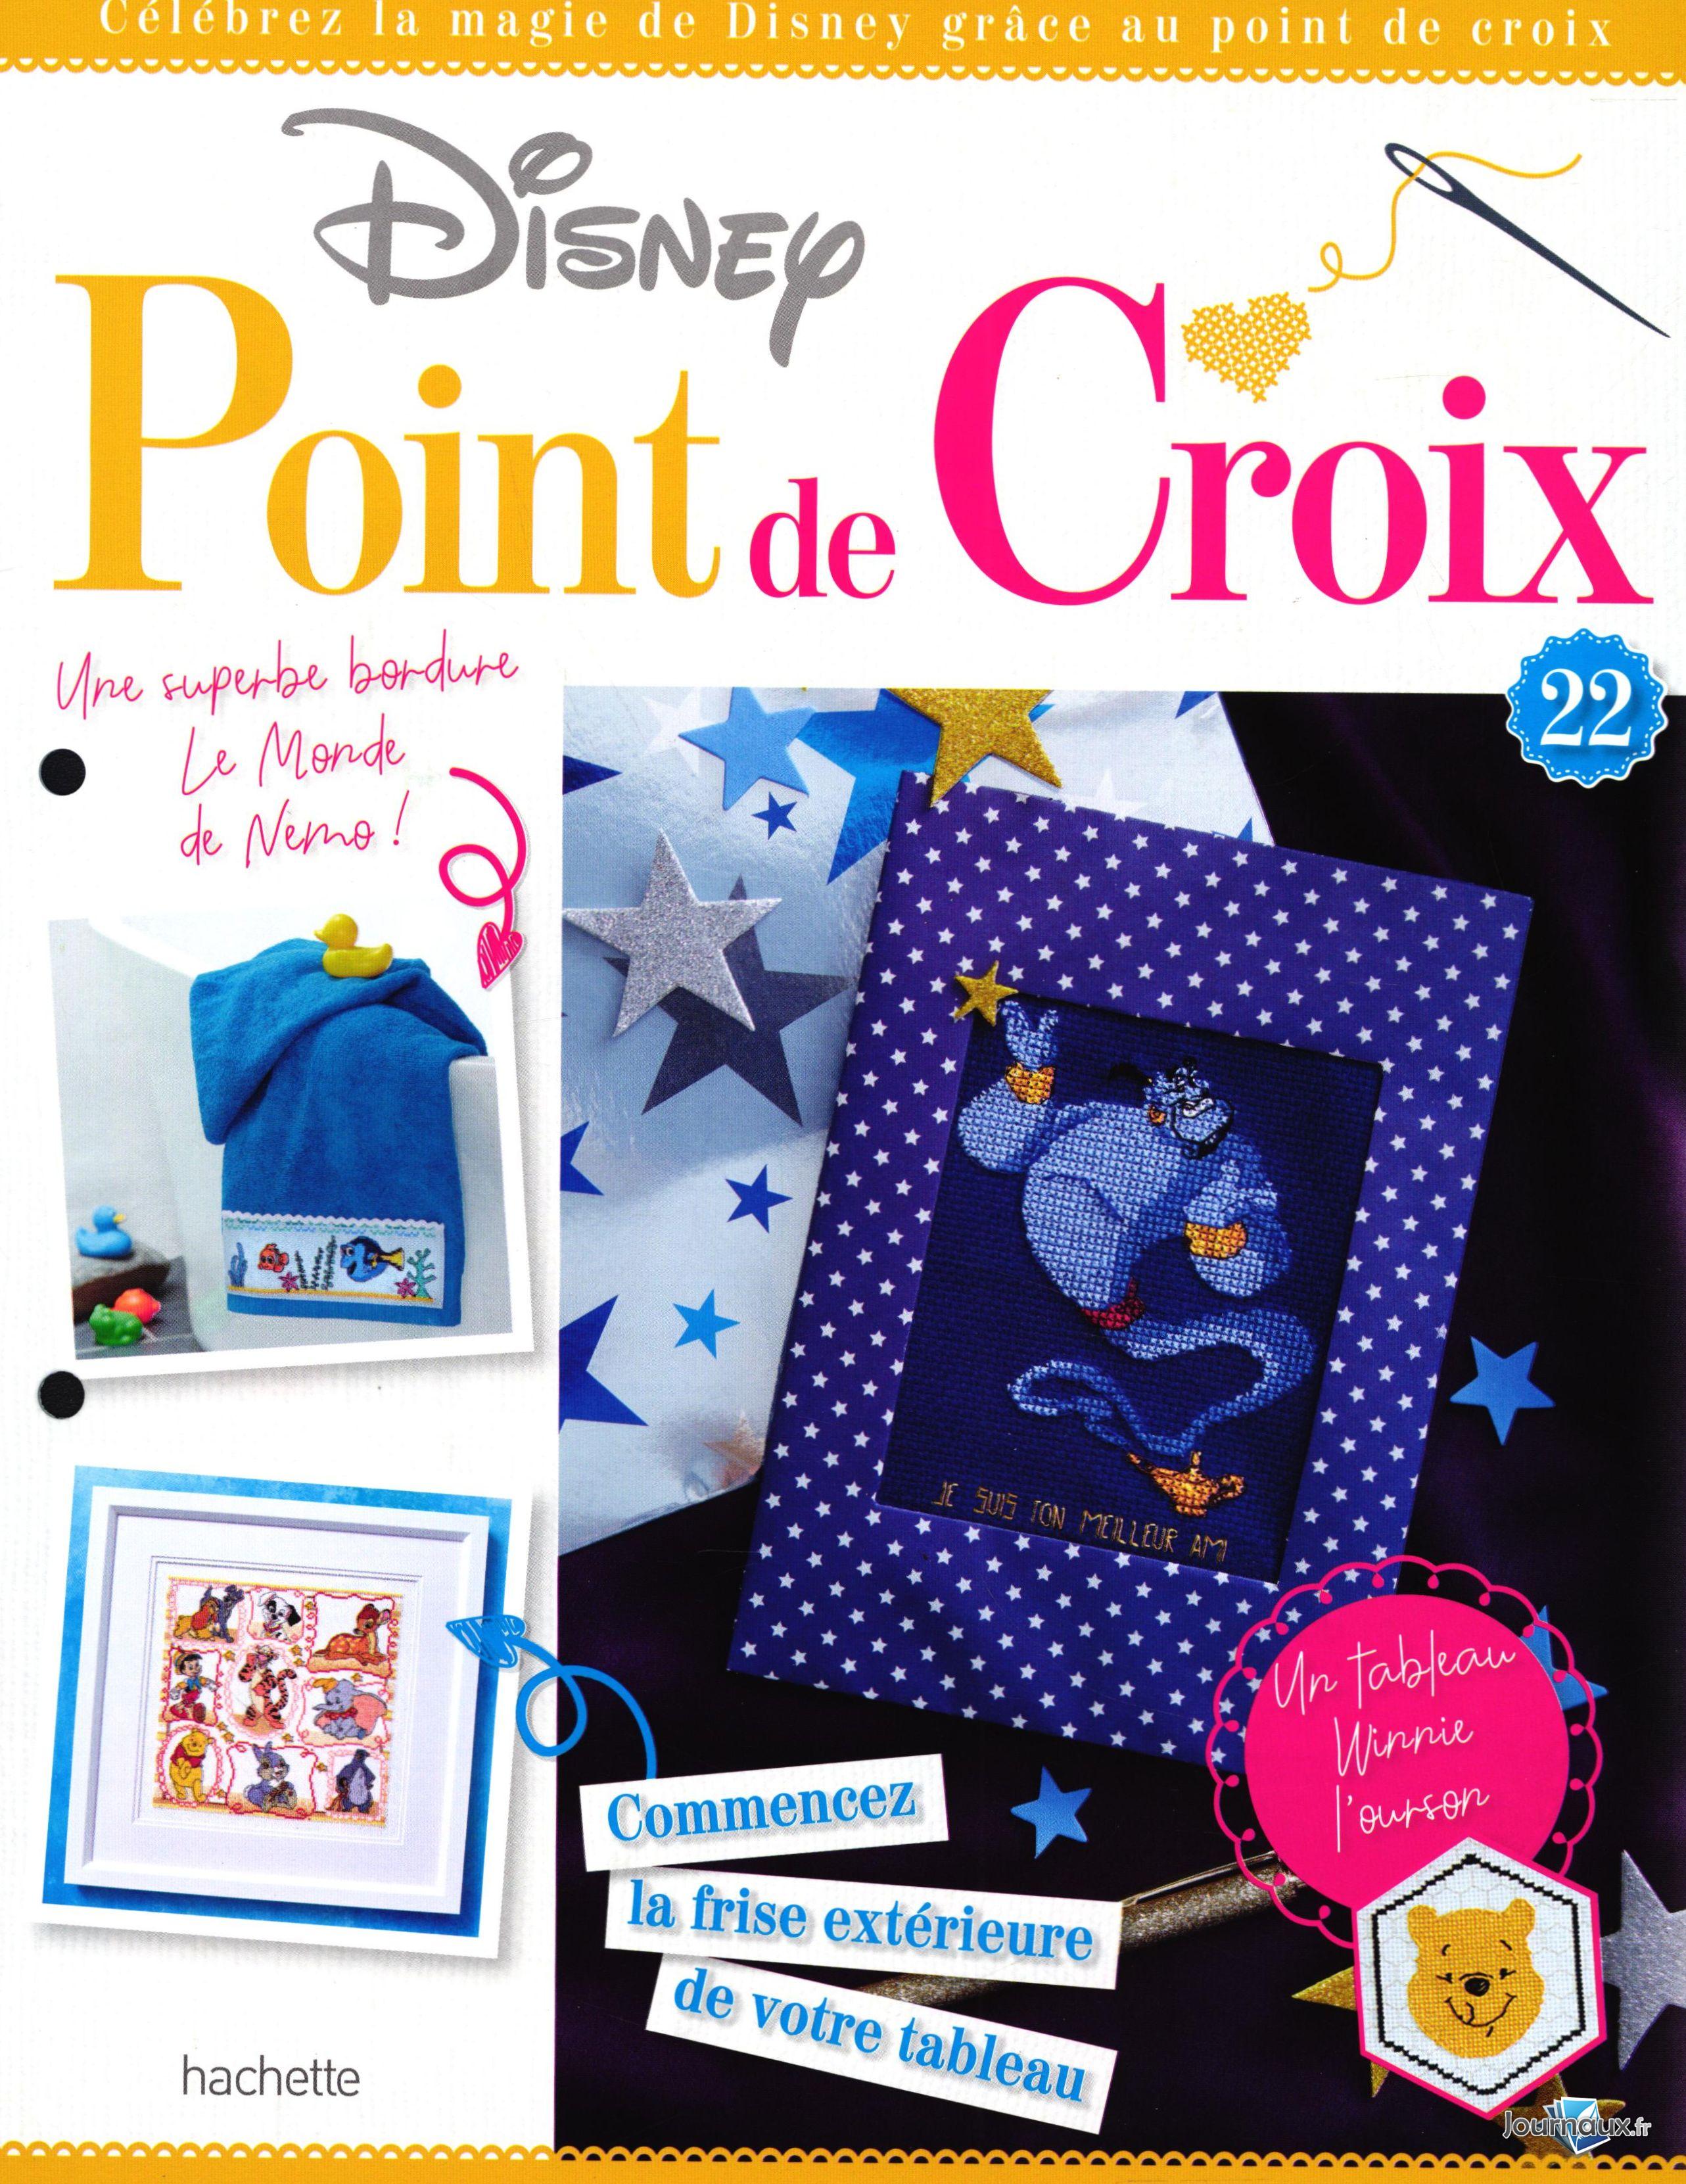 Point de croix Disney added a new - Point de croix Disney